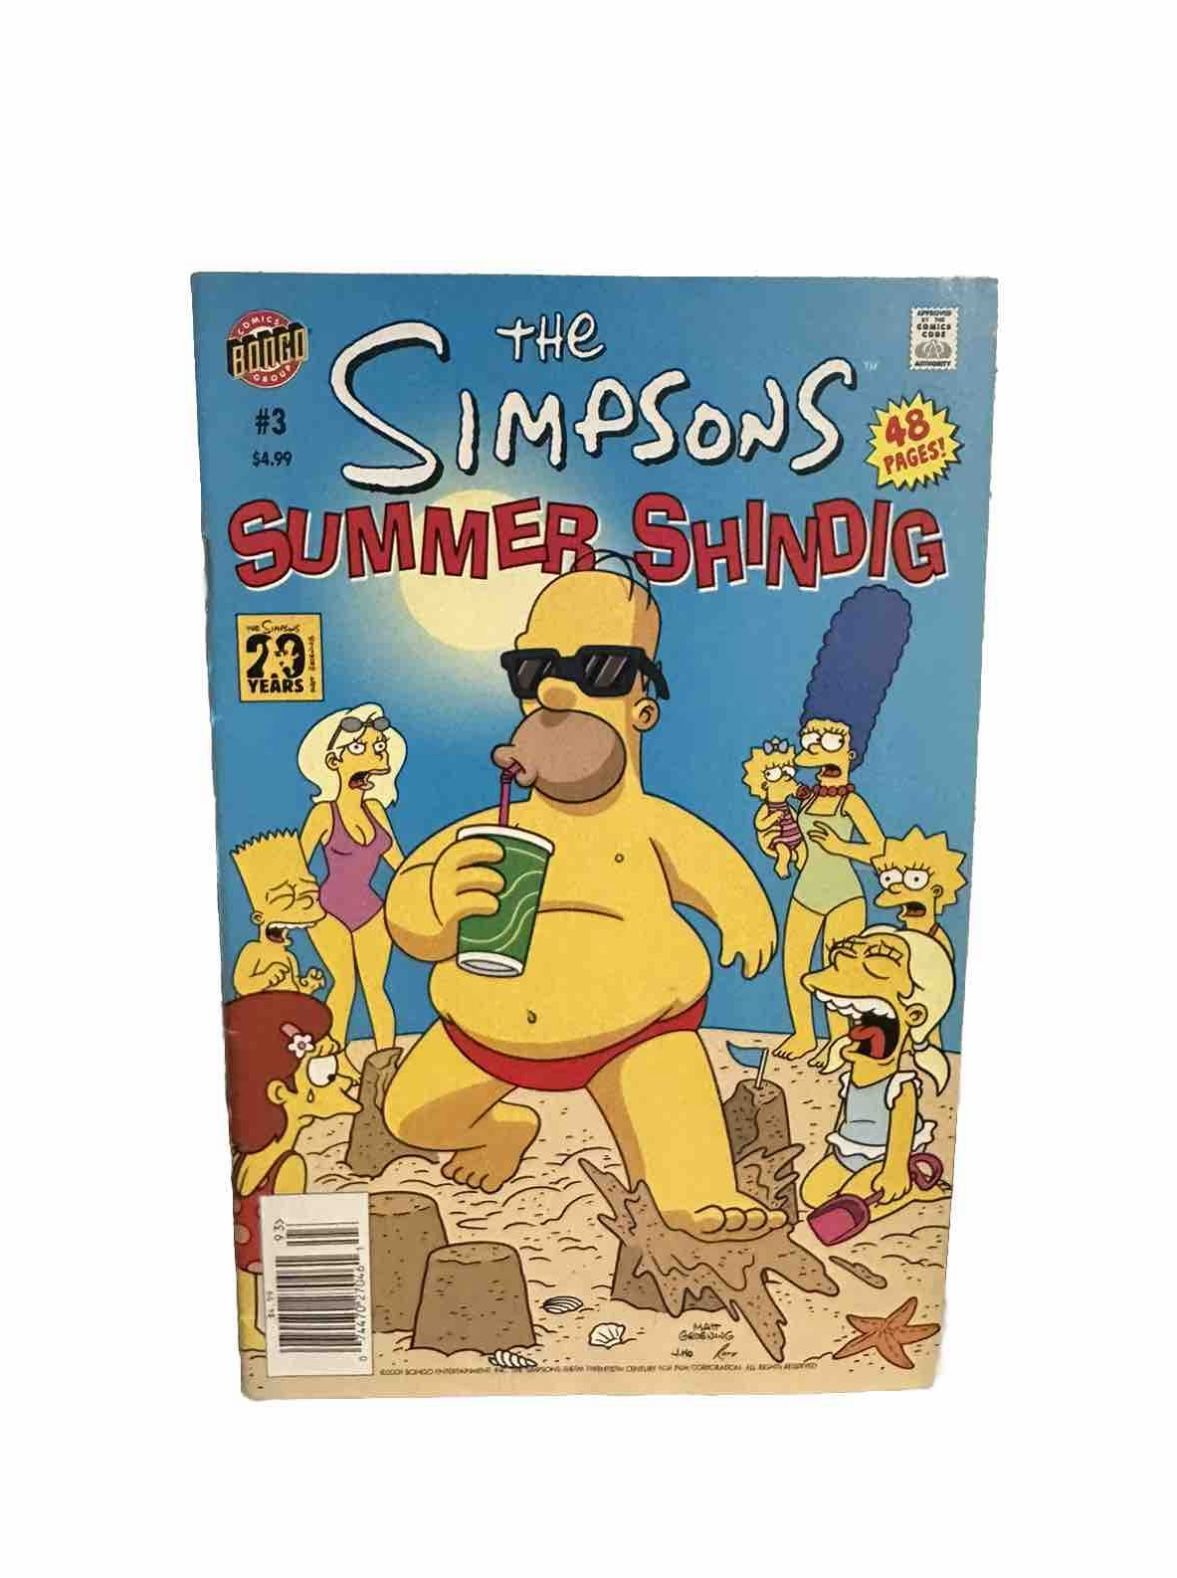 SIMPSONS SUMMER SHINDIG #3 VF, Giant Bongo Comics 2009